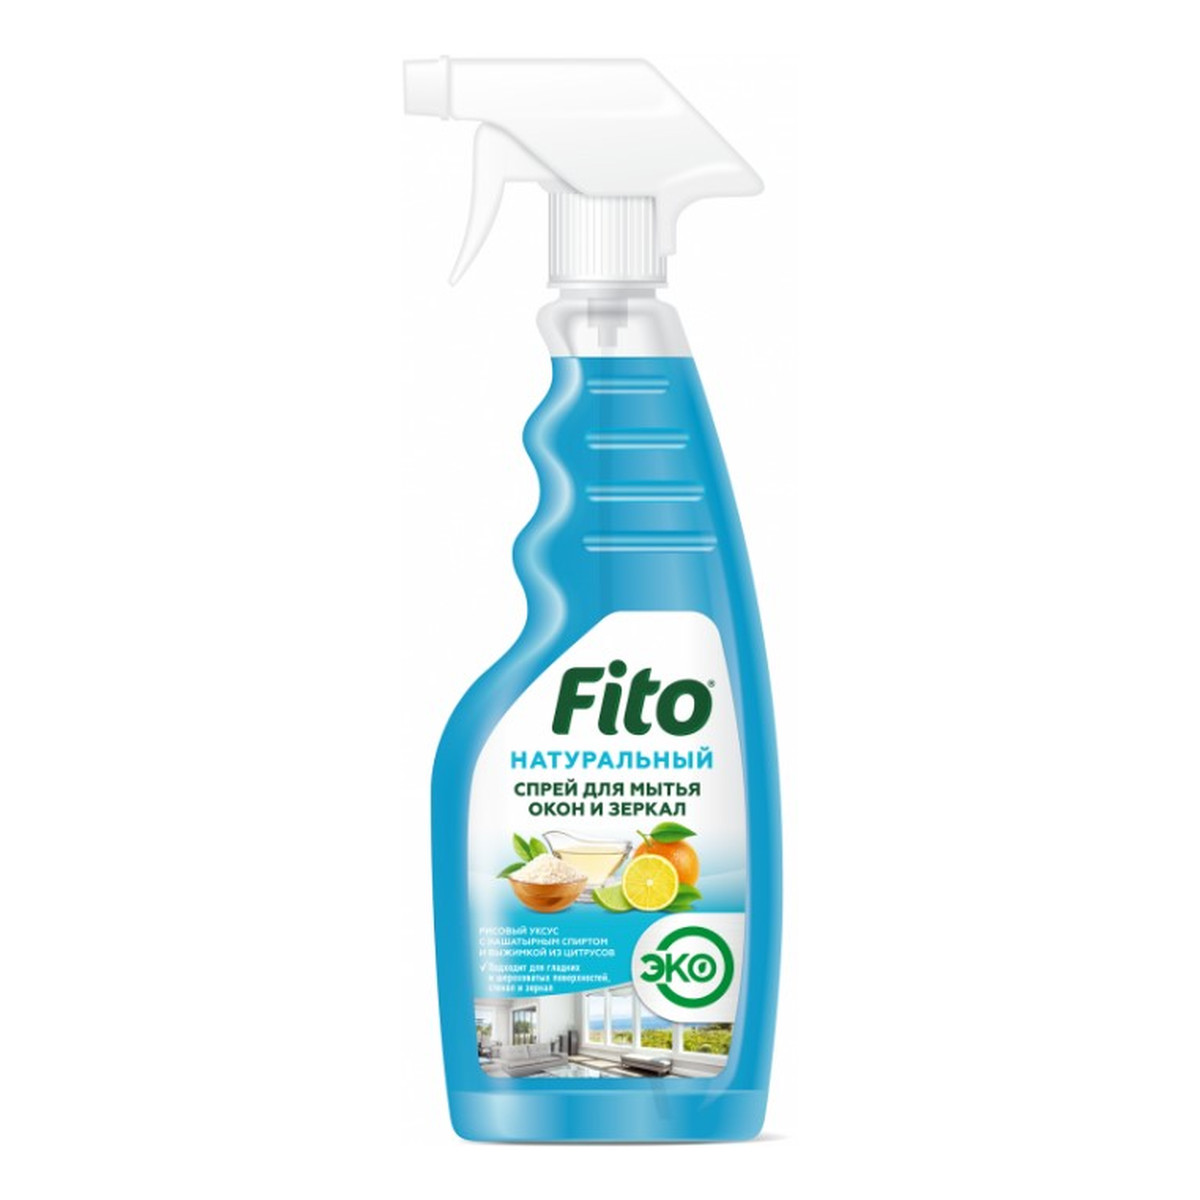 Fitokosmetik Fito Naturalny spray do mycia szyb i luster 500ml